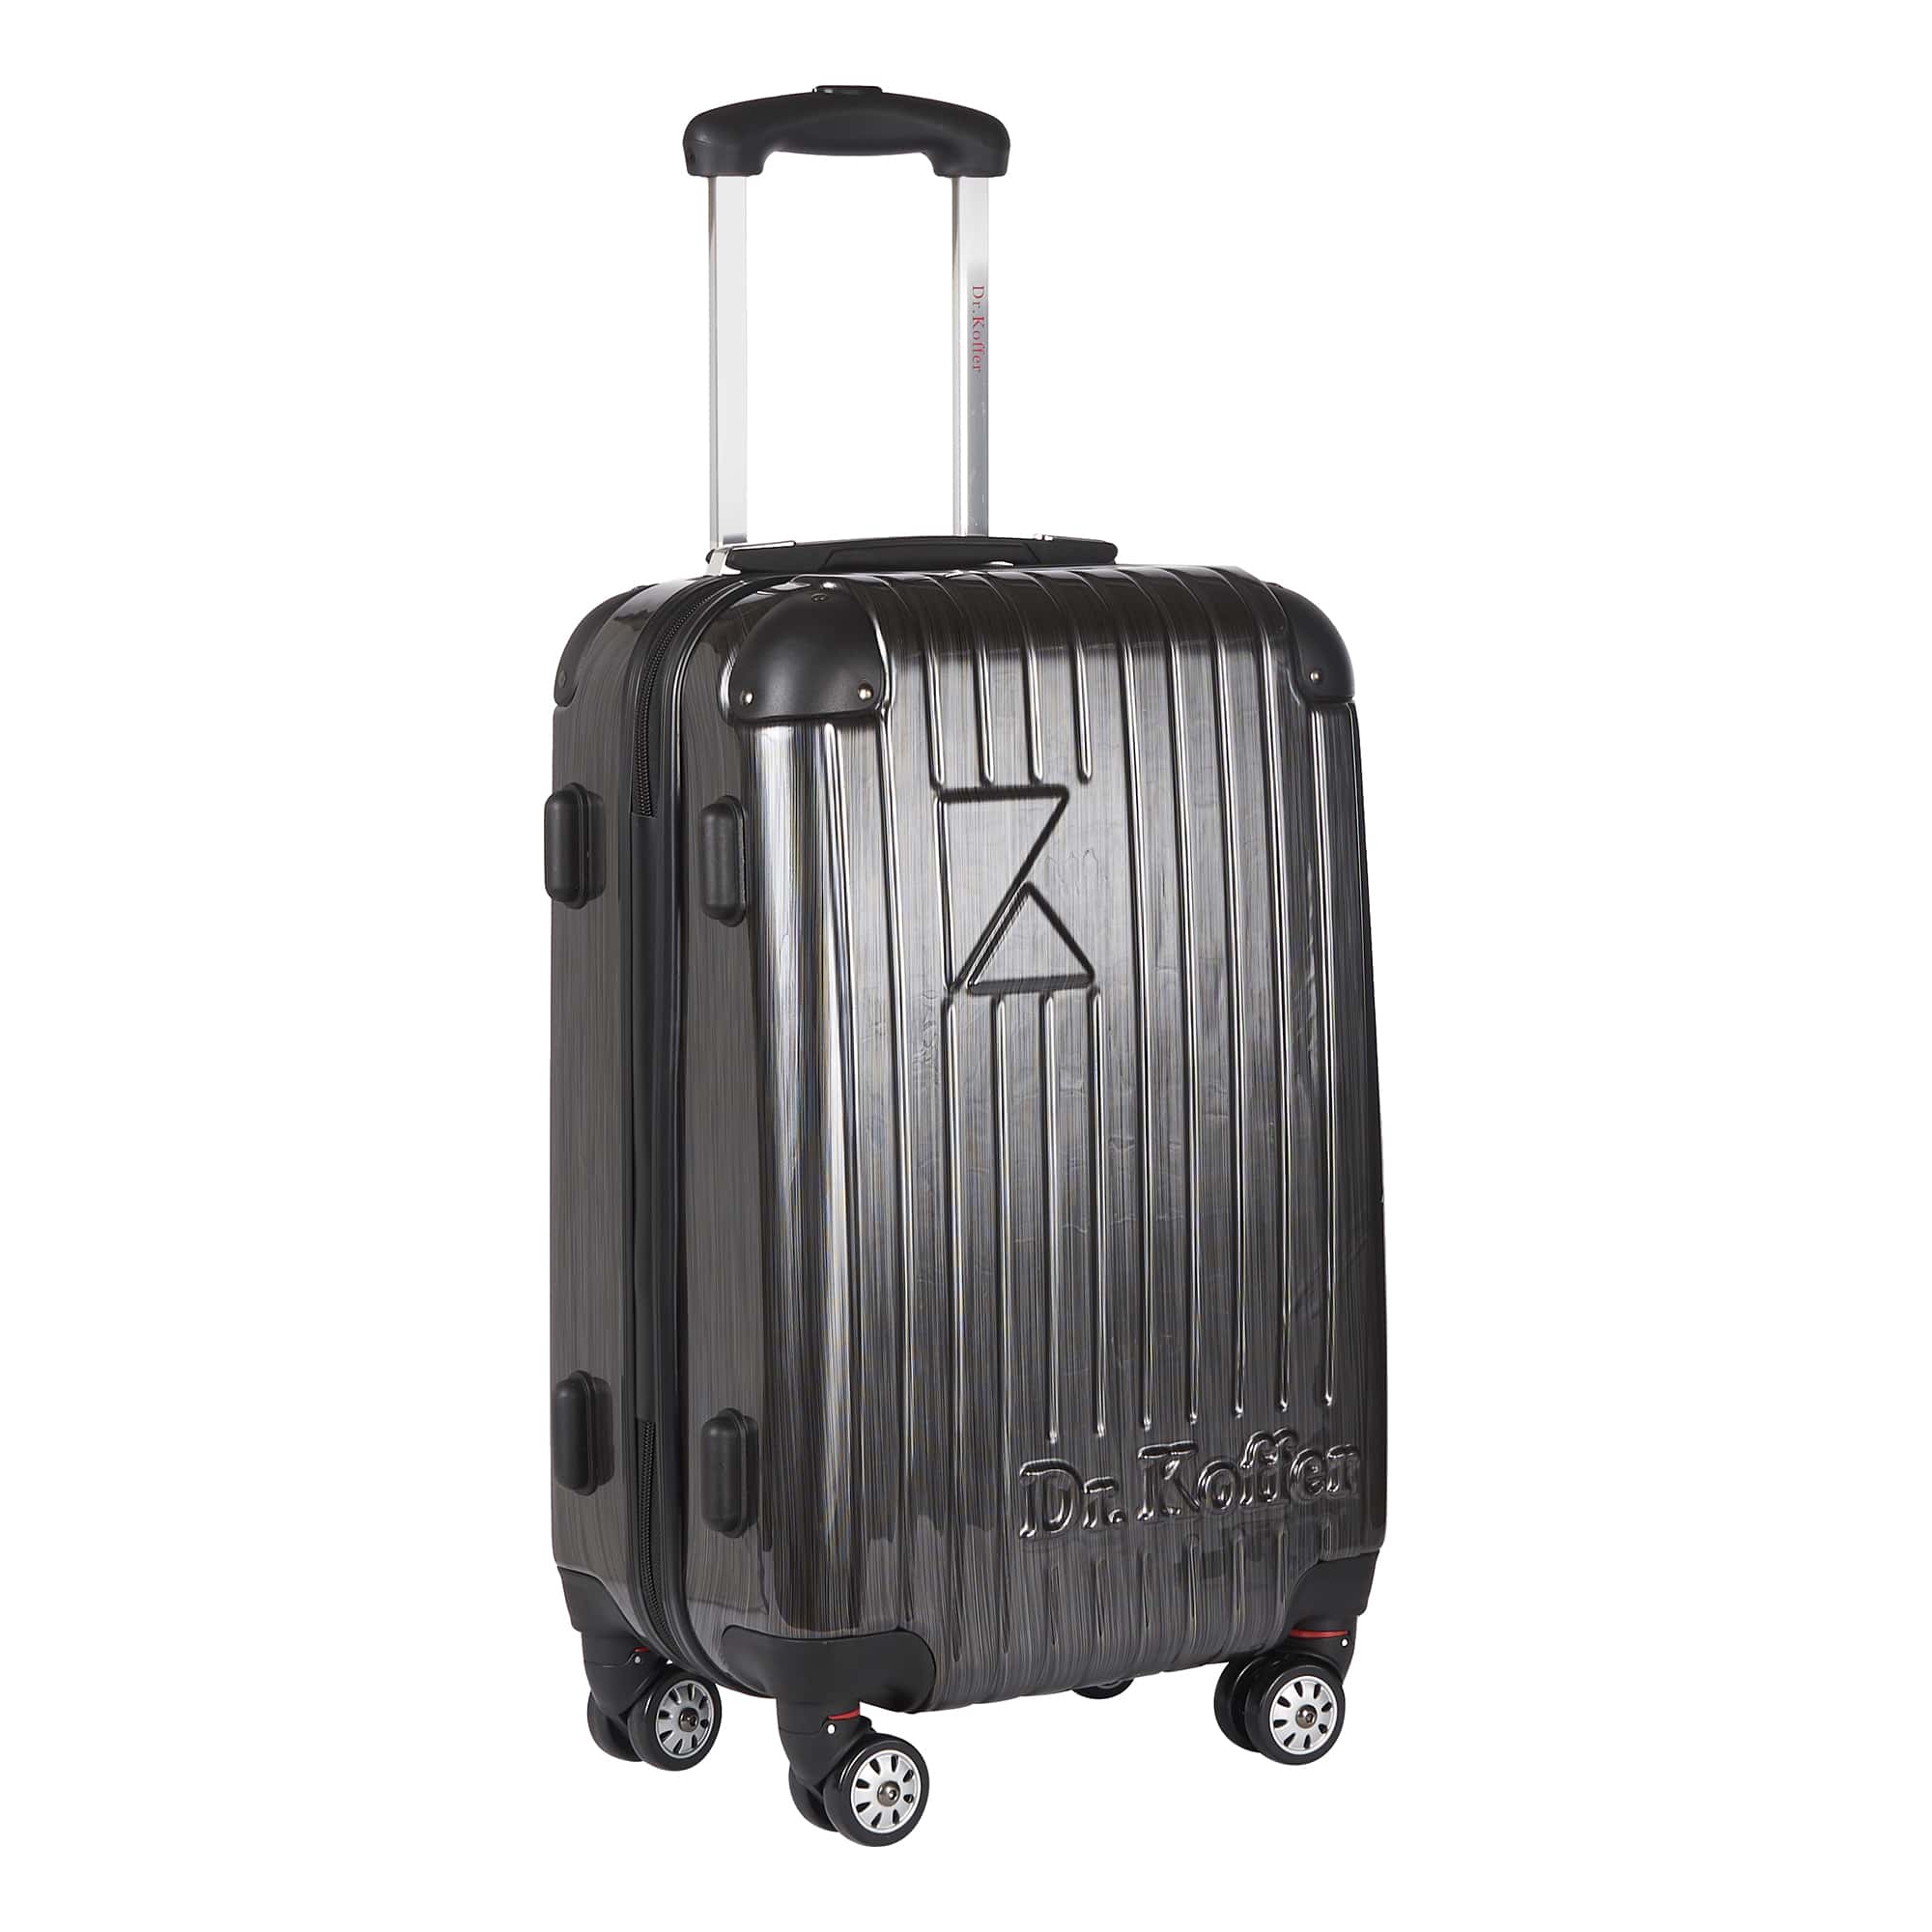 Др.Коффер L102TC24-250-27 чемодан, цвет серый - фото 1